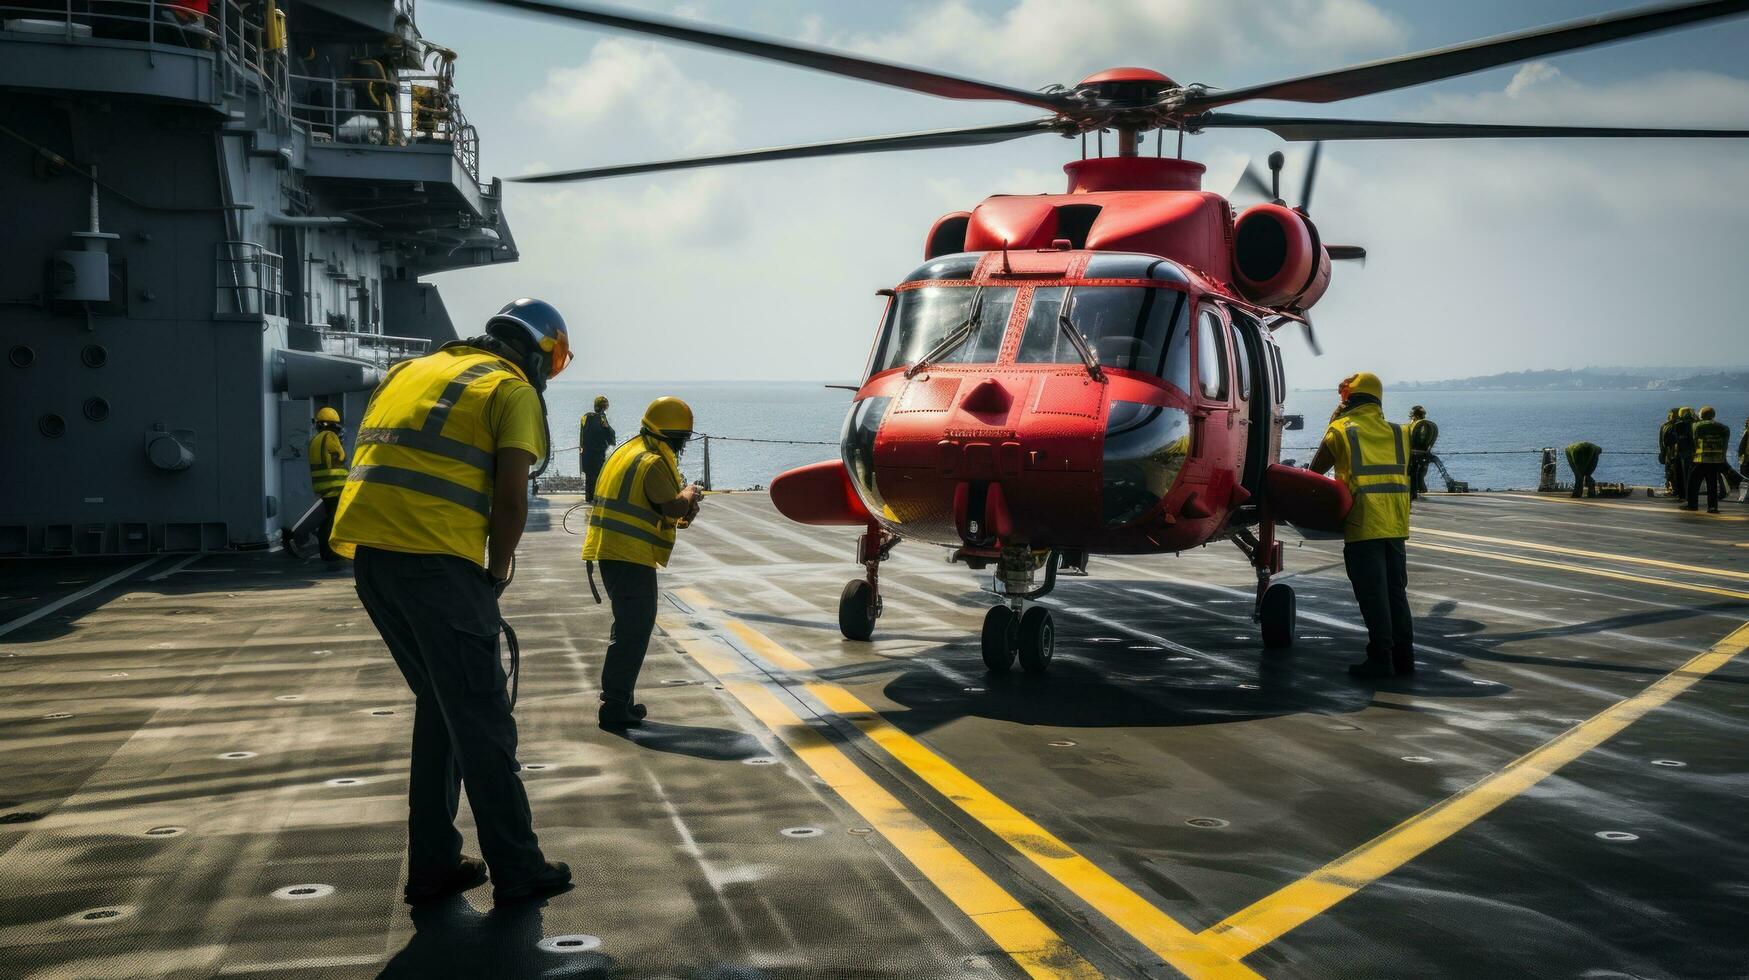 helicóptero aterrissagem em a área coberta do uma navio foto